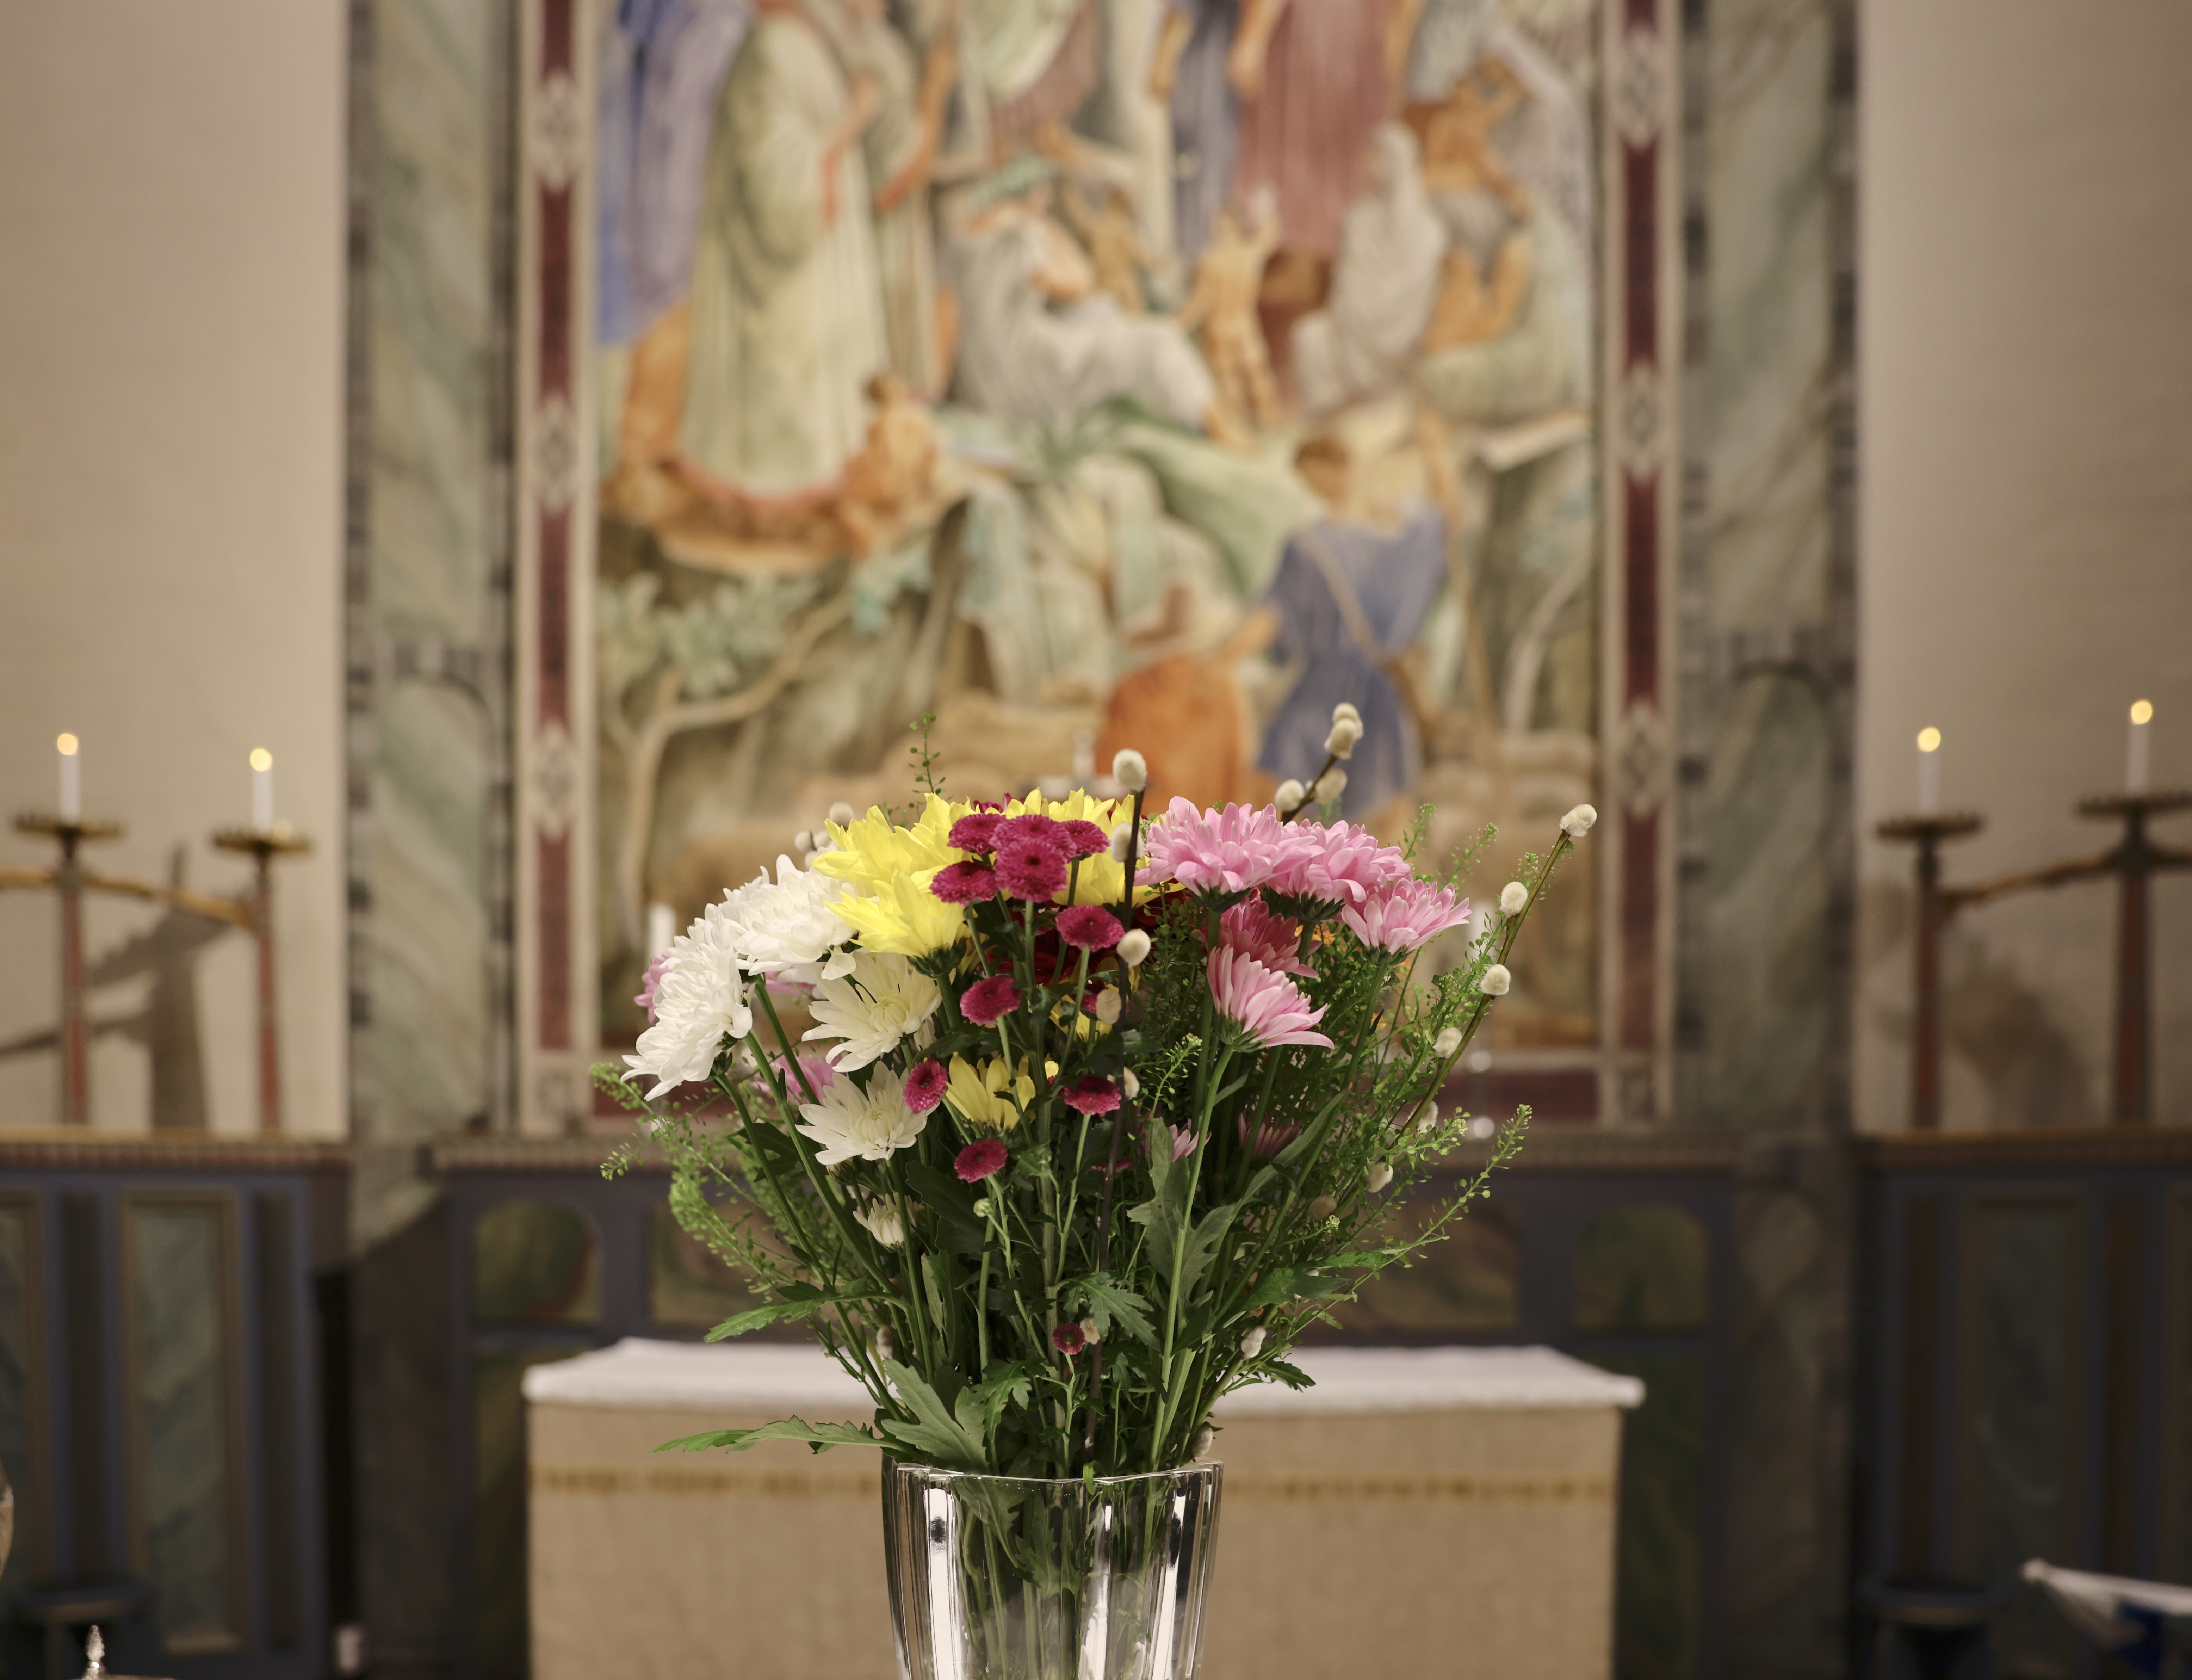 Blomsterarrangemang på altaret i kyrkan.